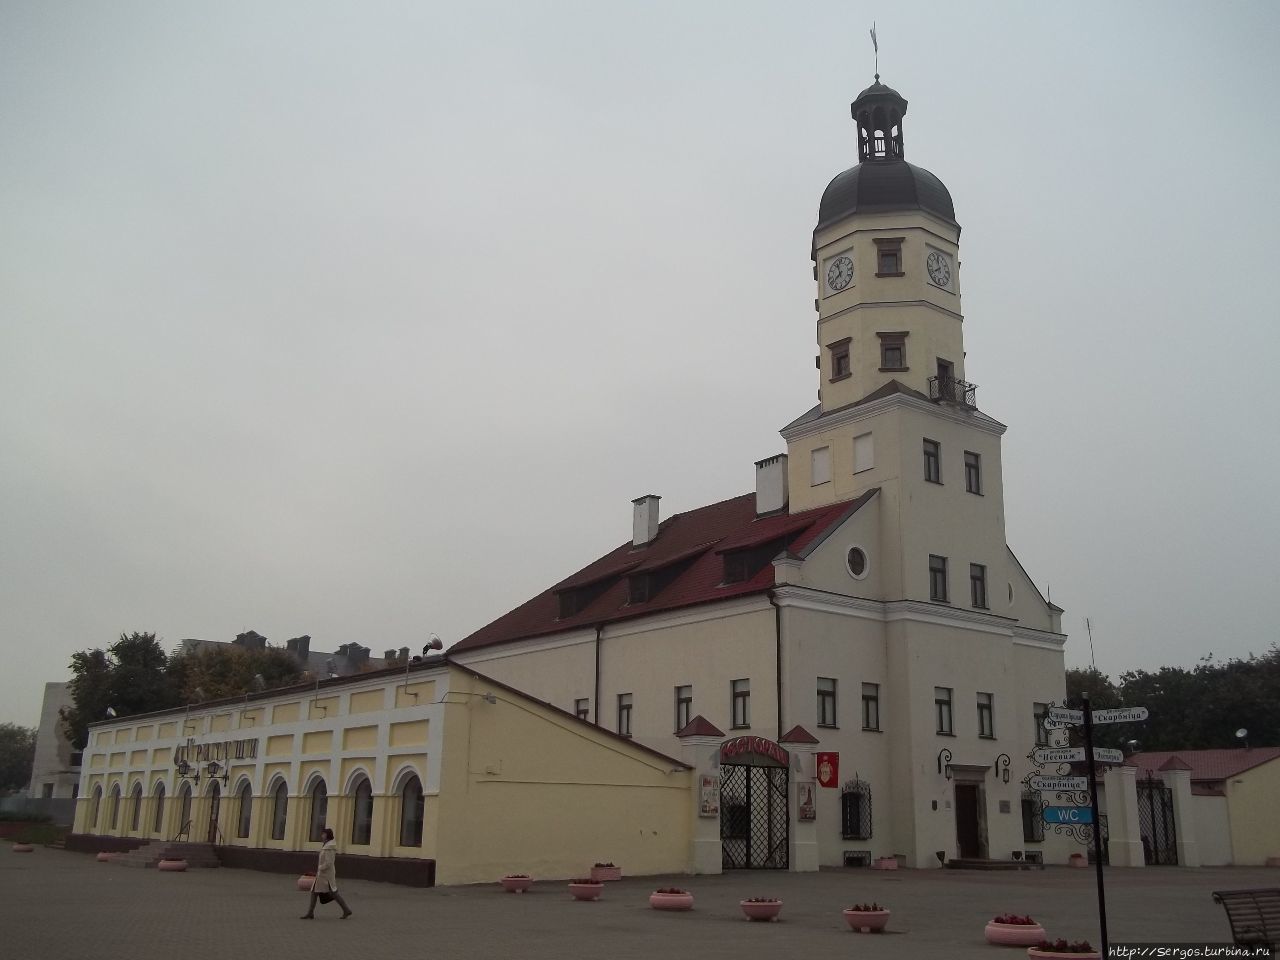 Ратуша (1586г.) в Несвиже. За долгие годы в ней перебывали гор. магистрат, суд, арсенал, весовая, архив. Беларусь